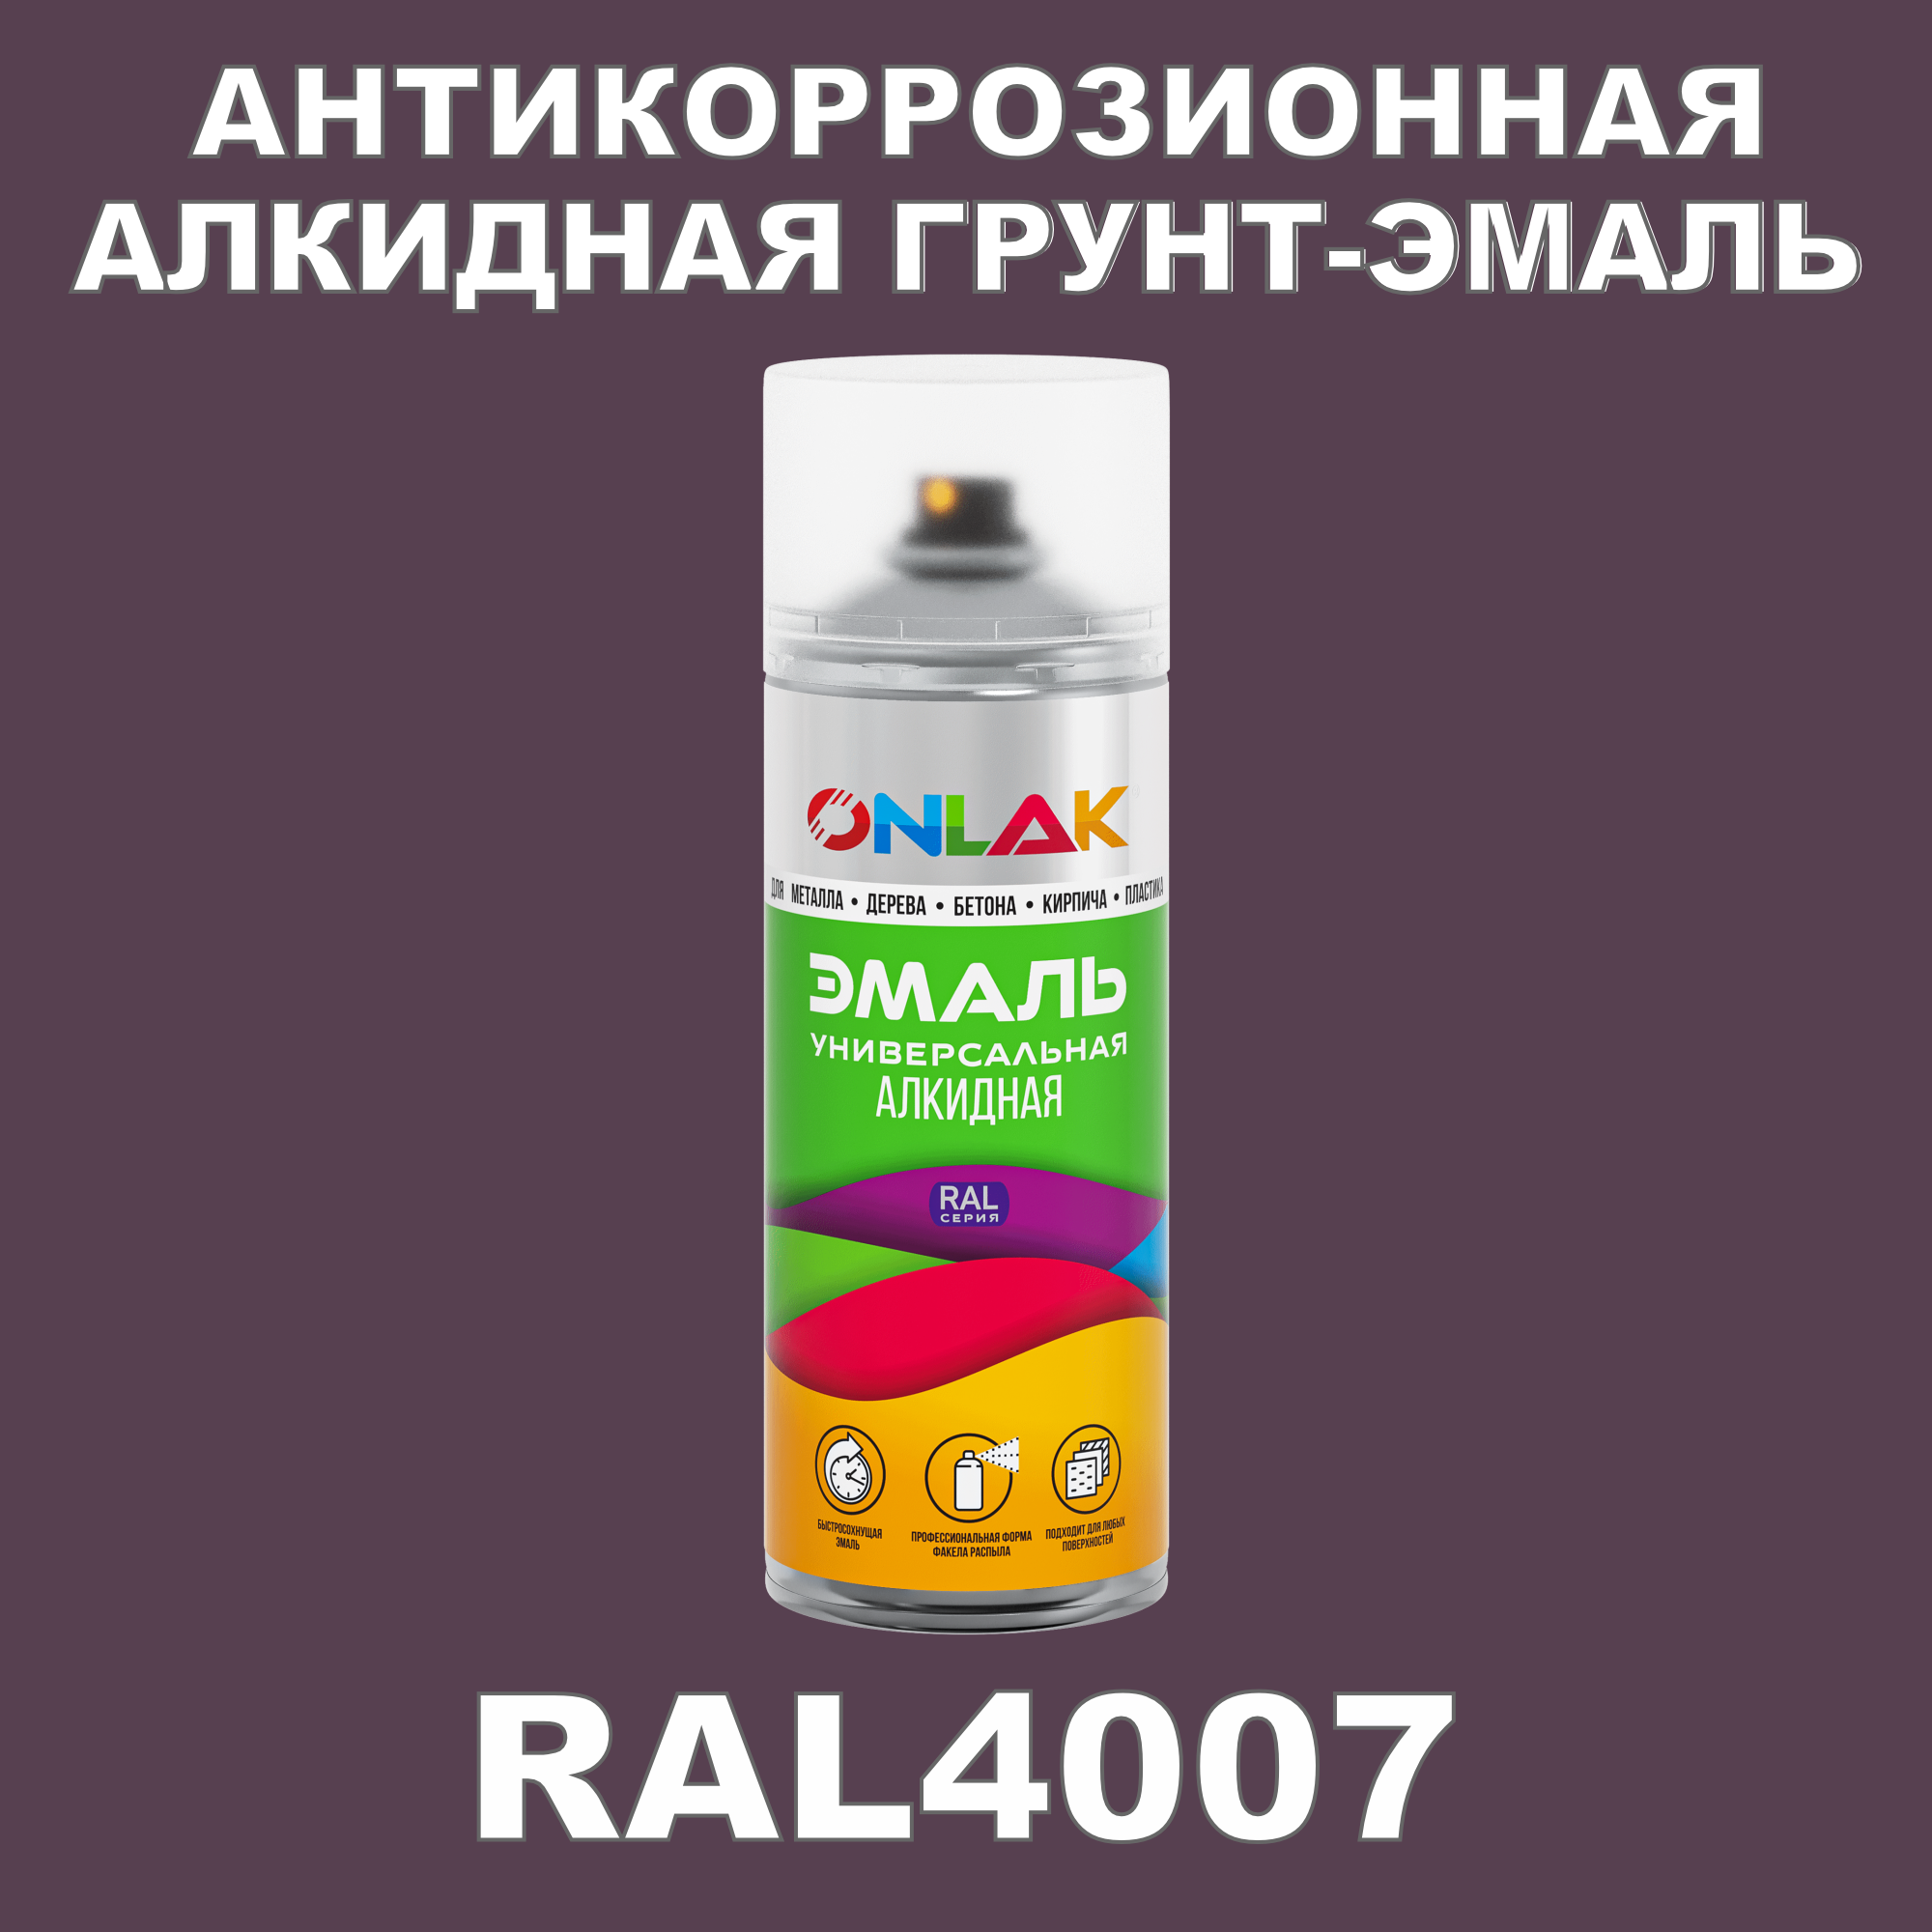 Антикоррозионная грунт-эмаль ONLAK RAL4007 полуматовая для металла и защиты от ржавчины